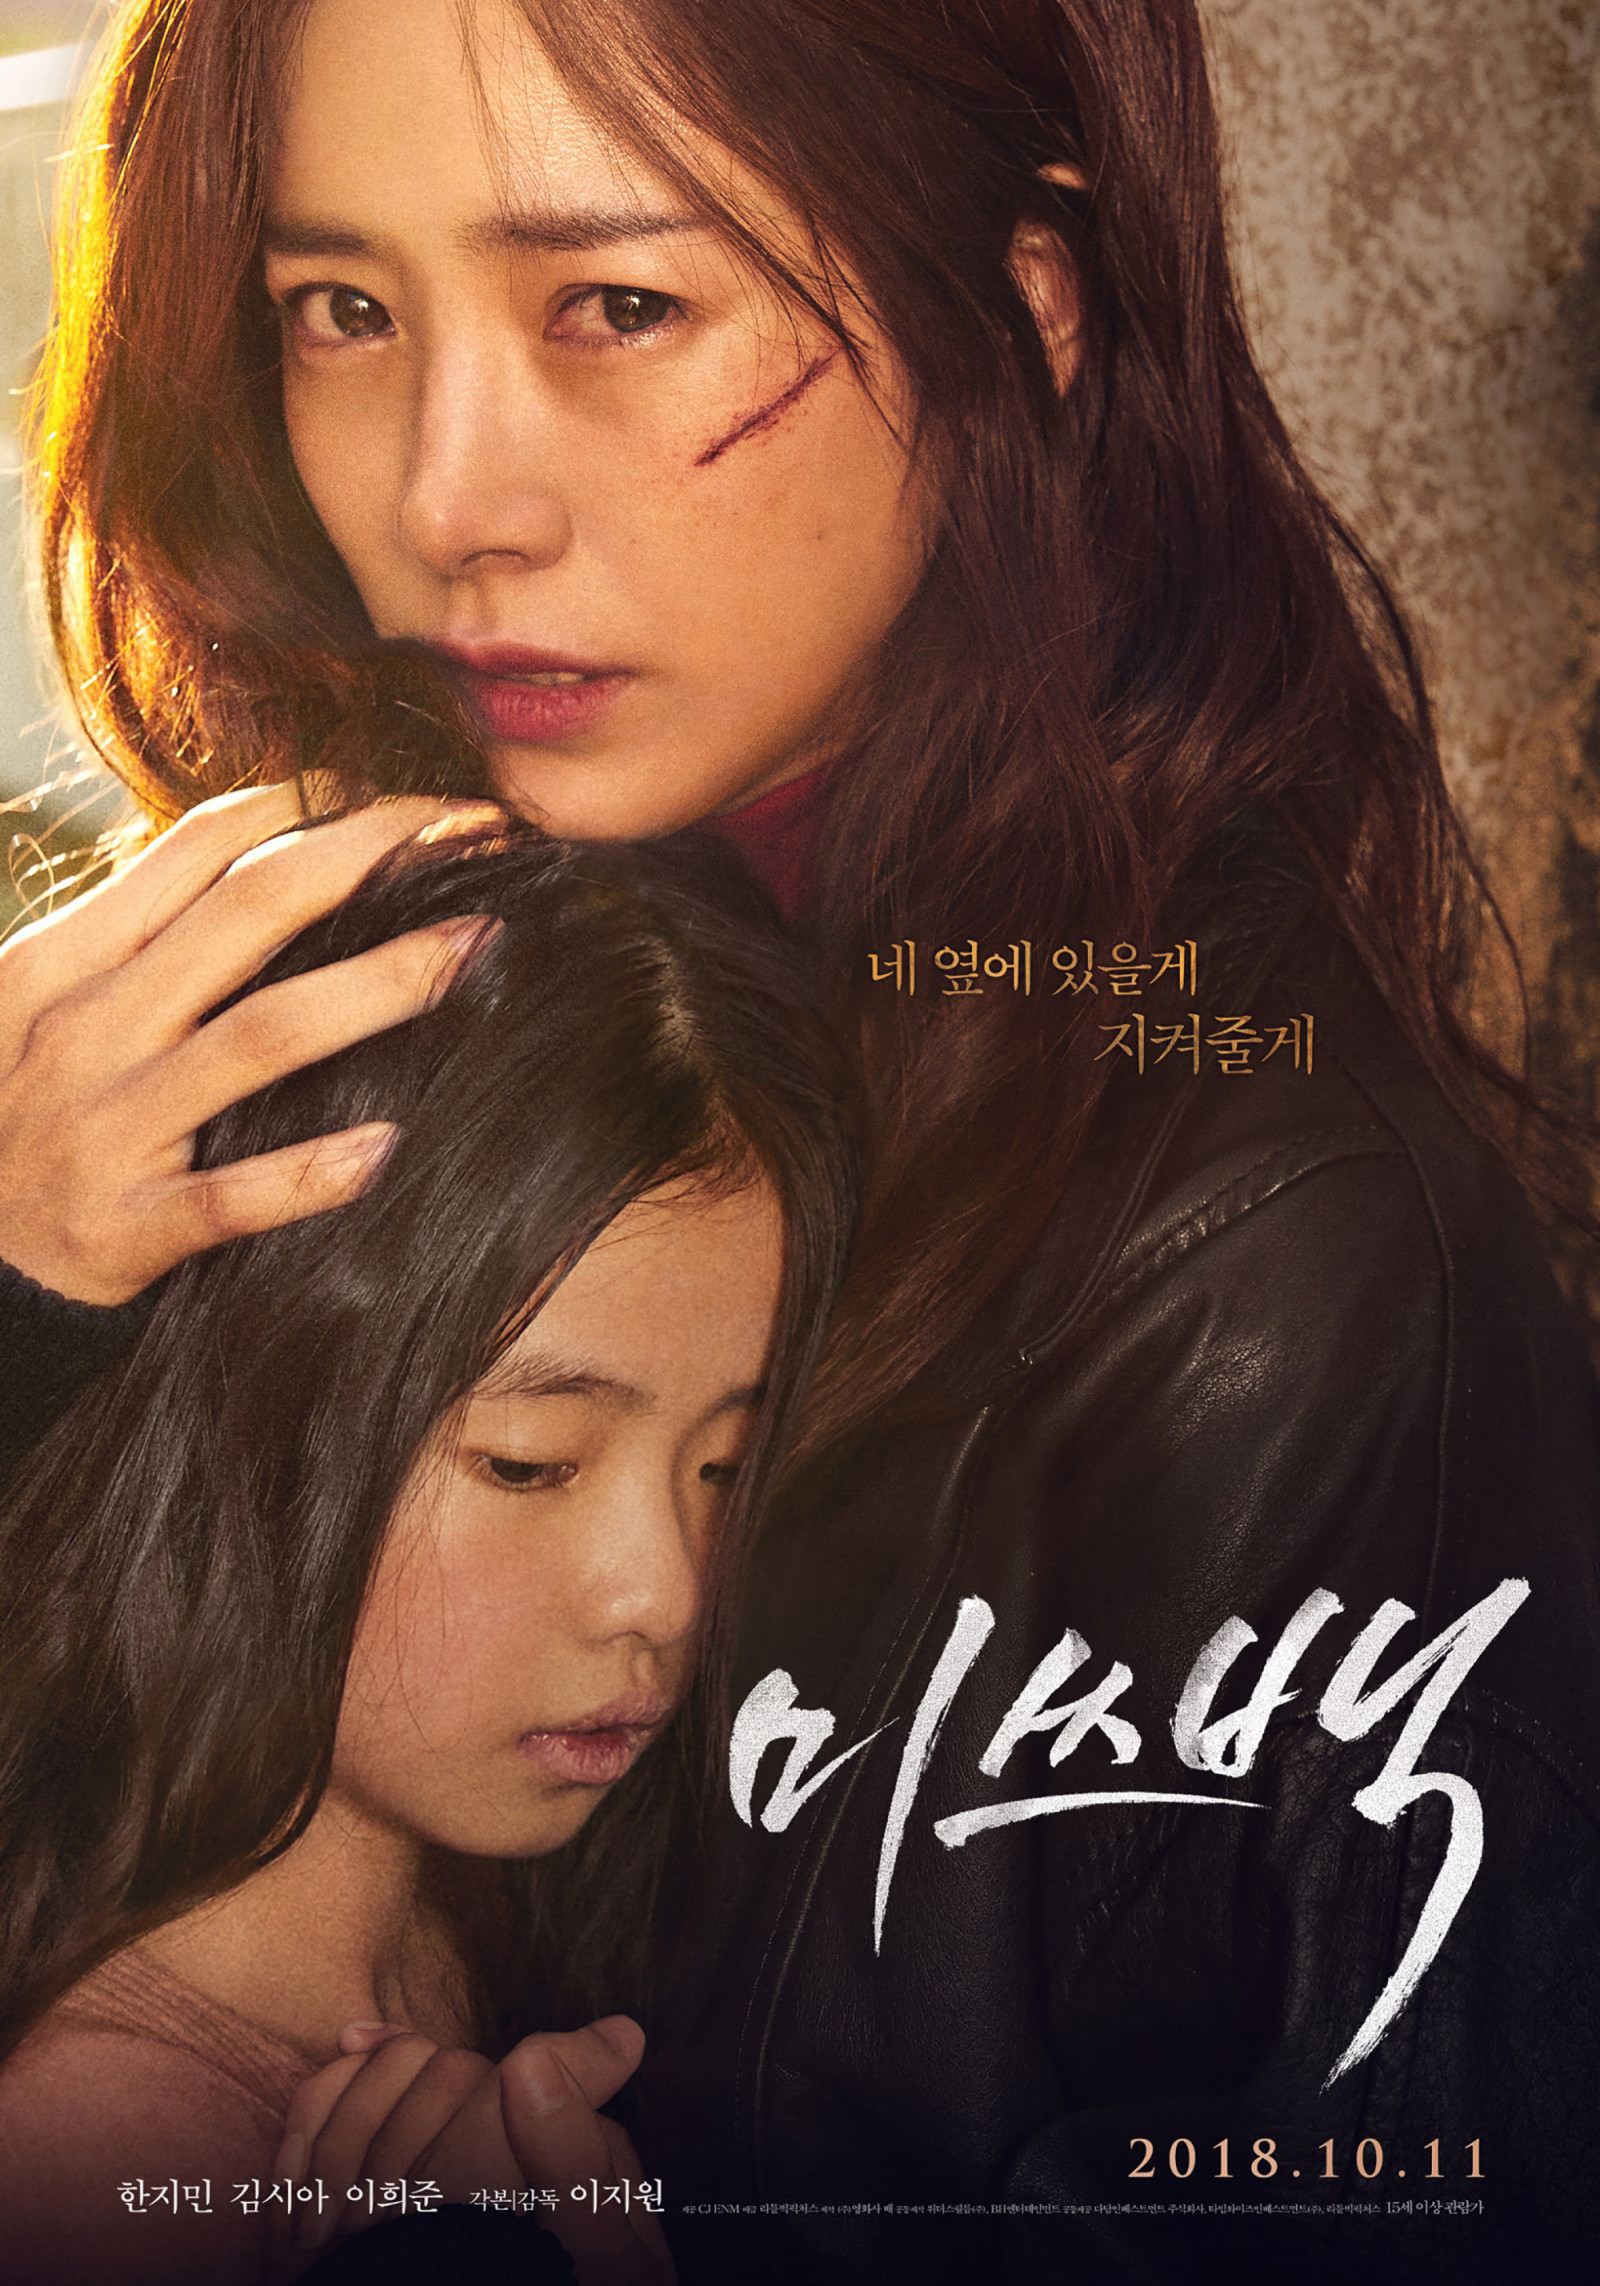 Han Ji Min trên poster của “Miss Baek”.